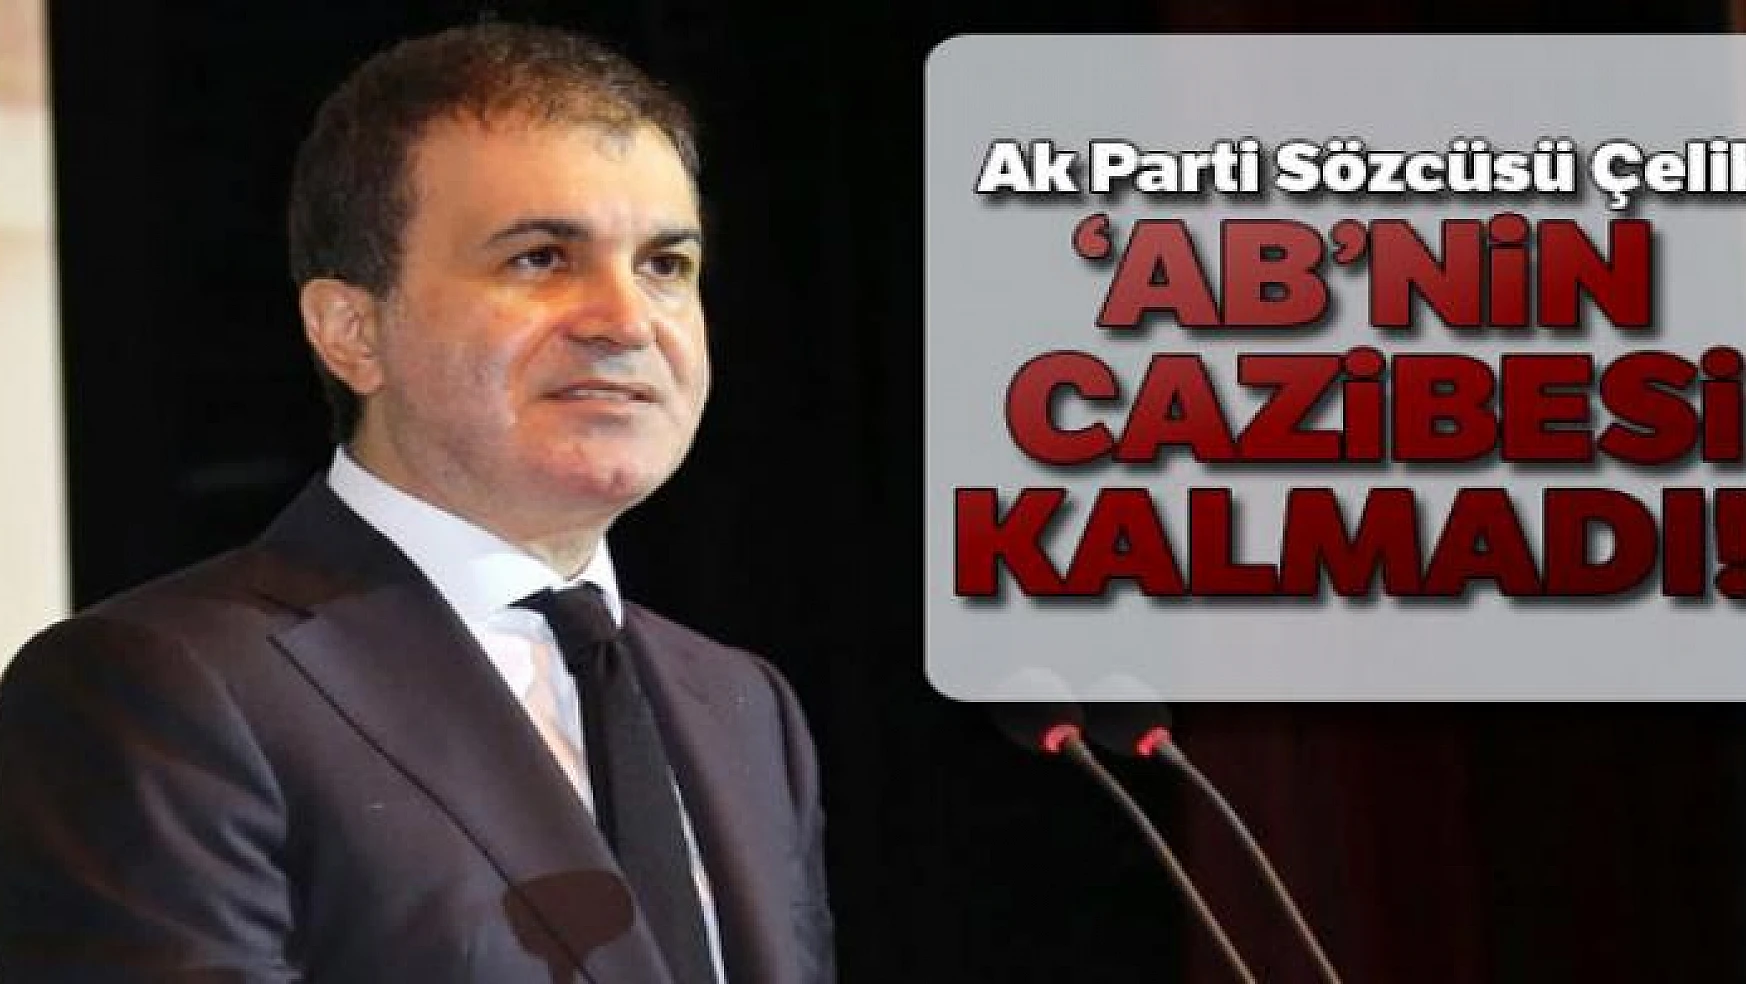 AK Parti Sözcüsü Çelik'ten, İngiltere'nin AB'den çıkışına dair açıklamalar